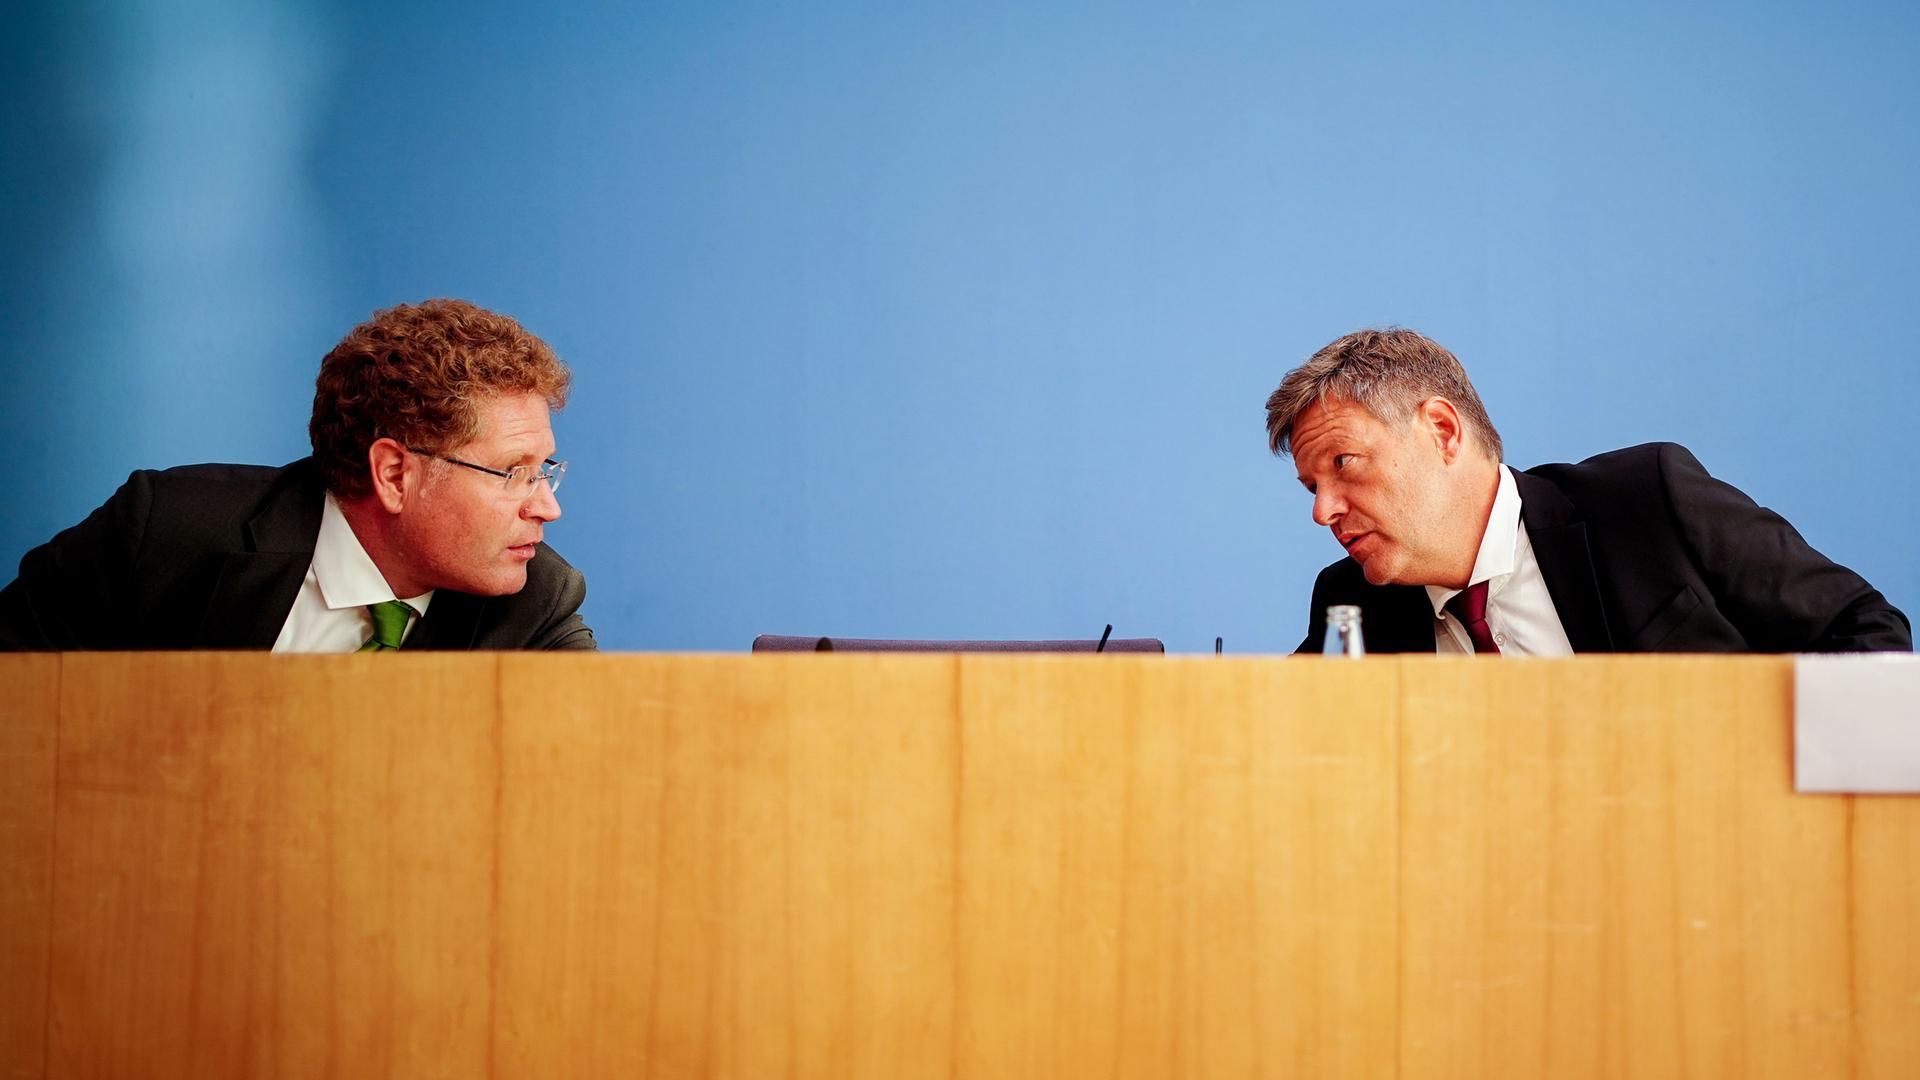 Habeck und Graichen sitzen auf der Bank der Bundespressekonferenz. Beide schauen sich an und sprechen miteinander.